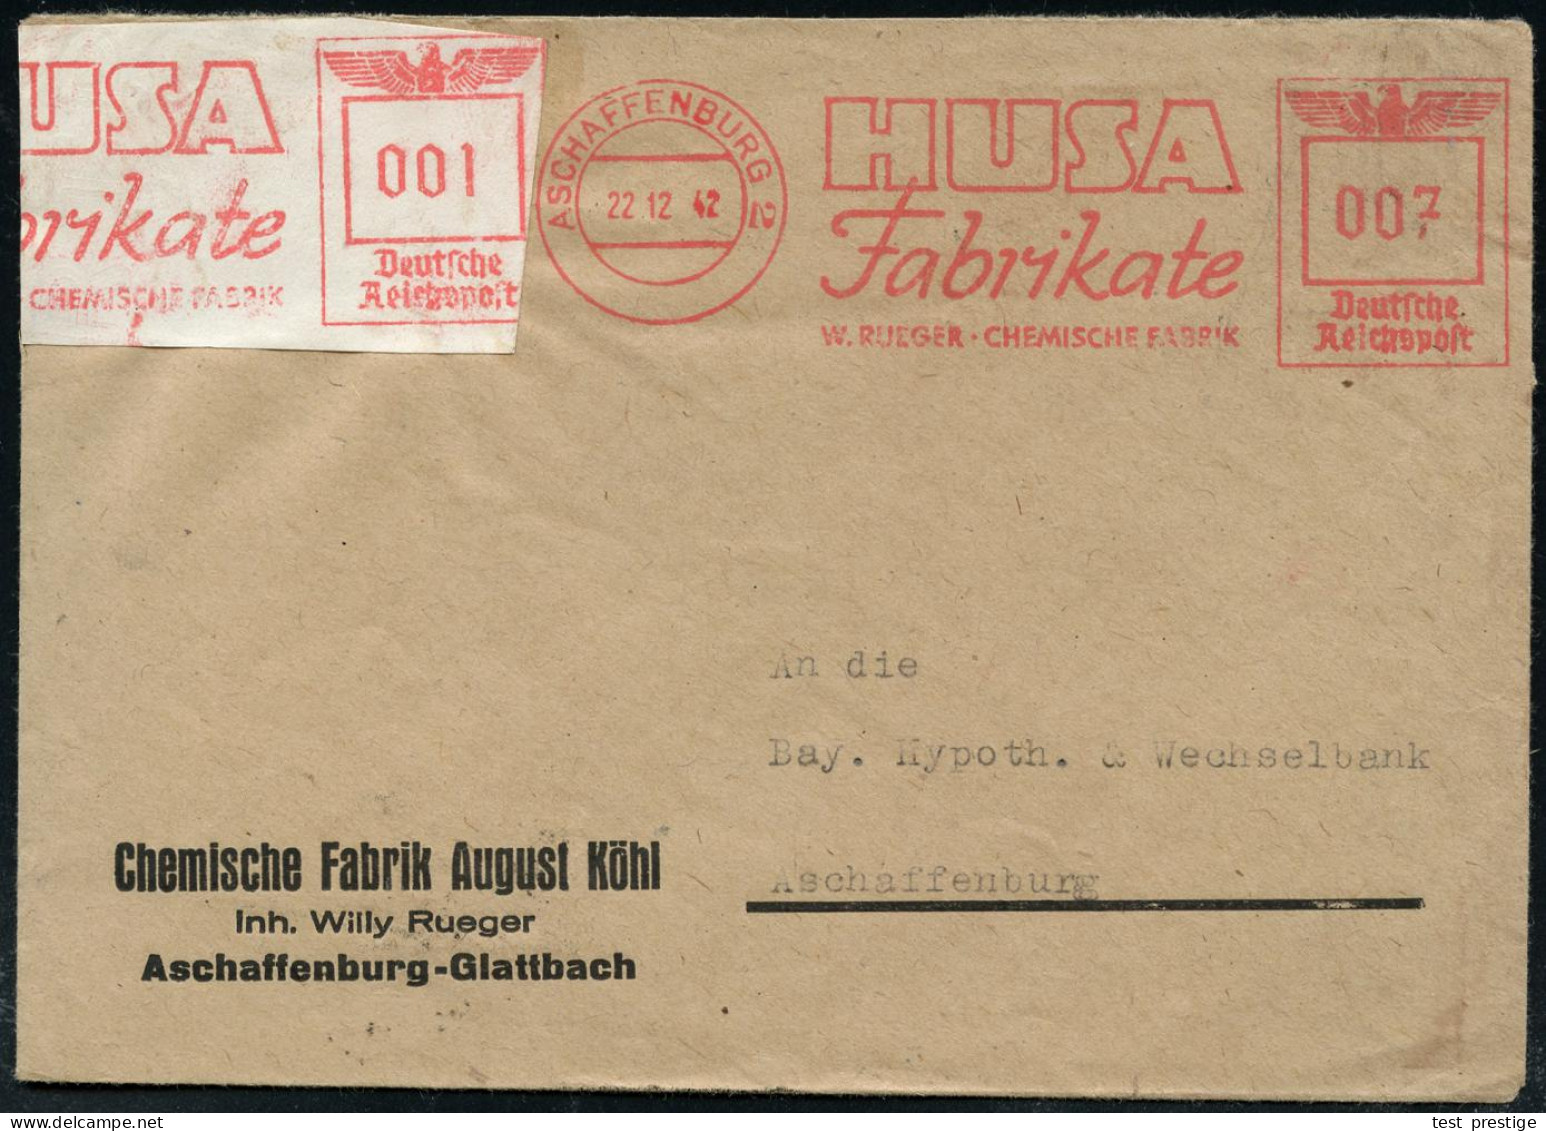 ASCHAFFENBURG 2/ HUSA/ Fabrikate/ W.RUEGER-CHEMISCHE FABRIK 1942 (22.12.) AFS Francotyp 007 Pf. + Aufkleber Mit AFS 001  - Chemie